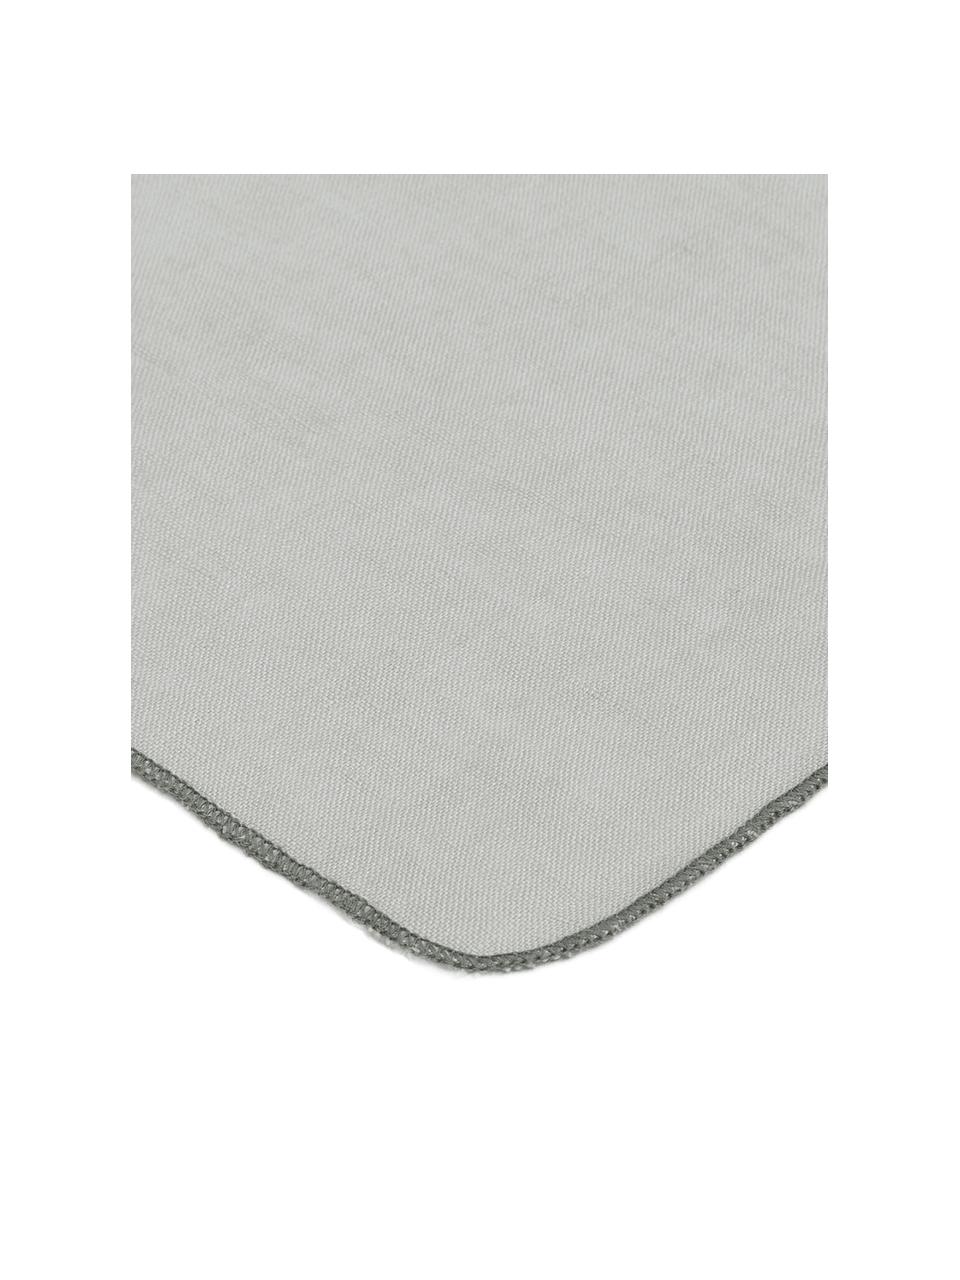 Serviettes de table en lin Gracie, 2 pièces, 100 % lin, Gris, larg. 45 x long. 45 cm